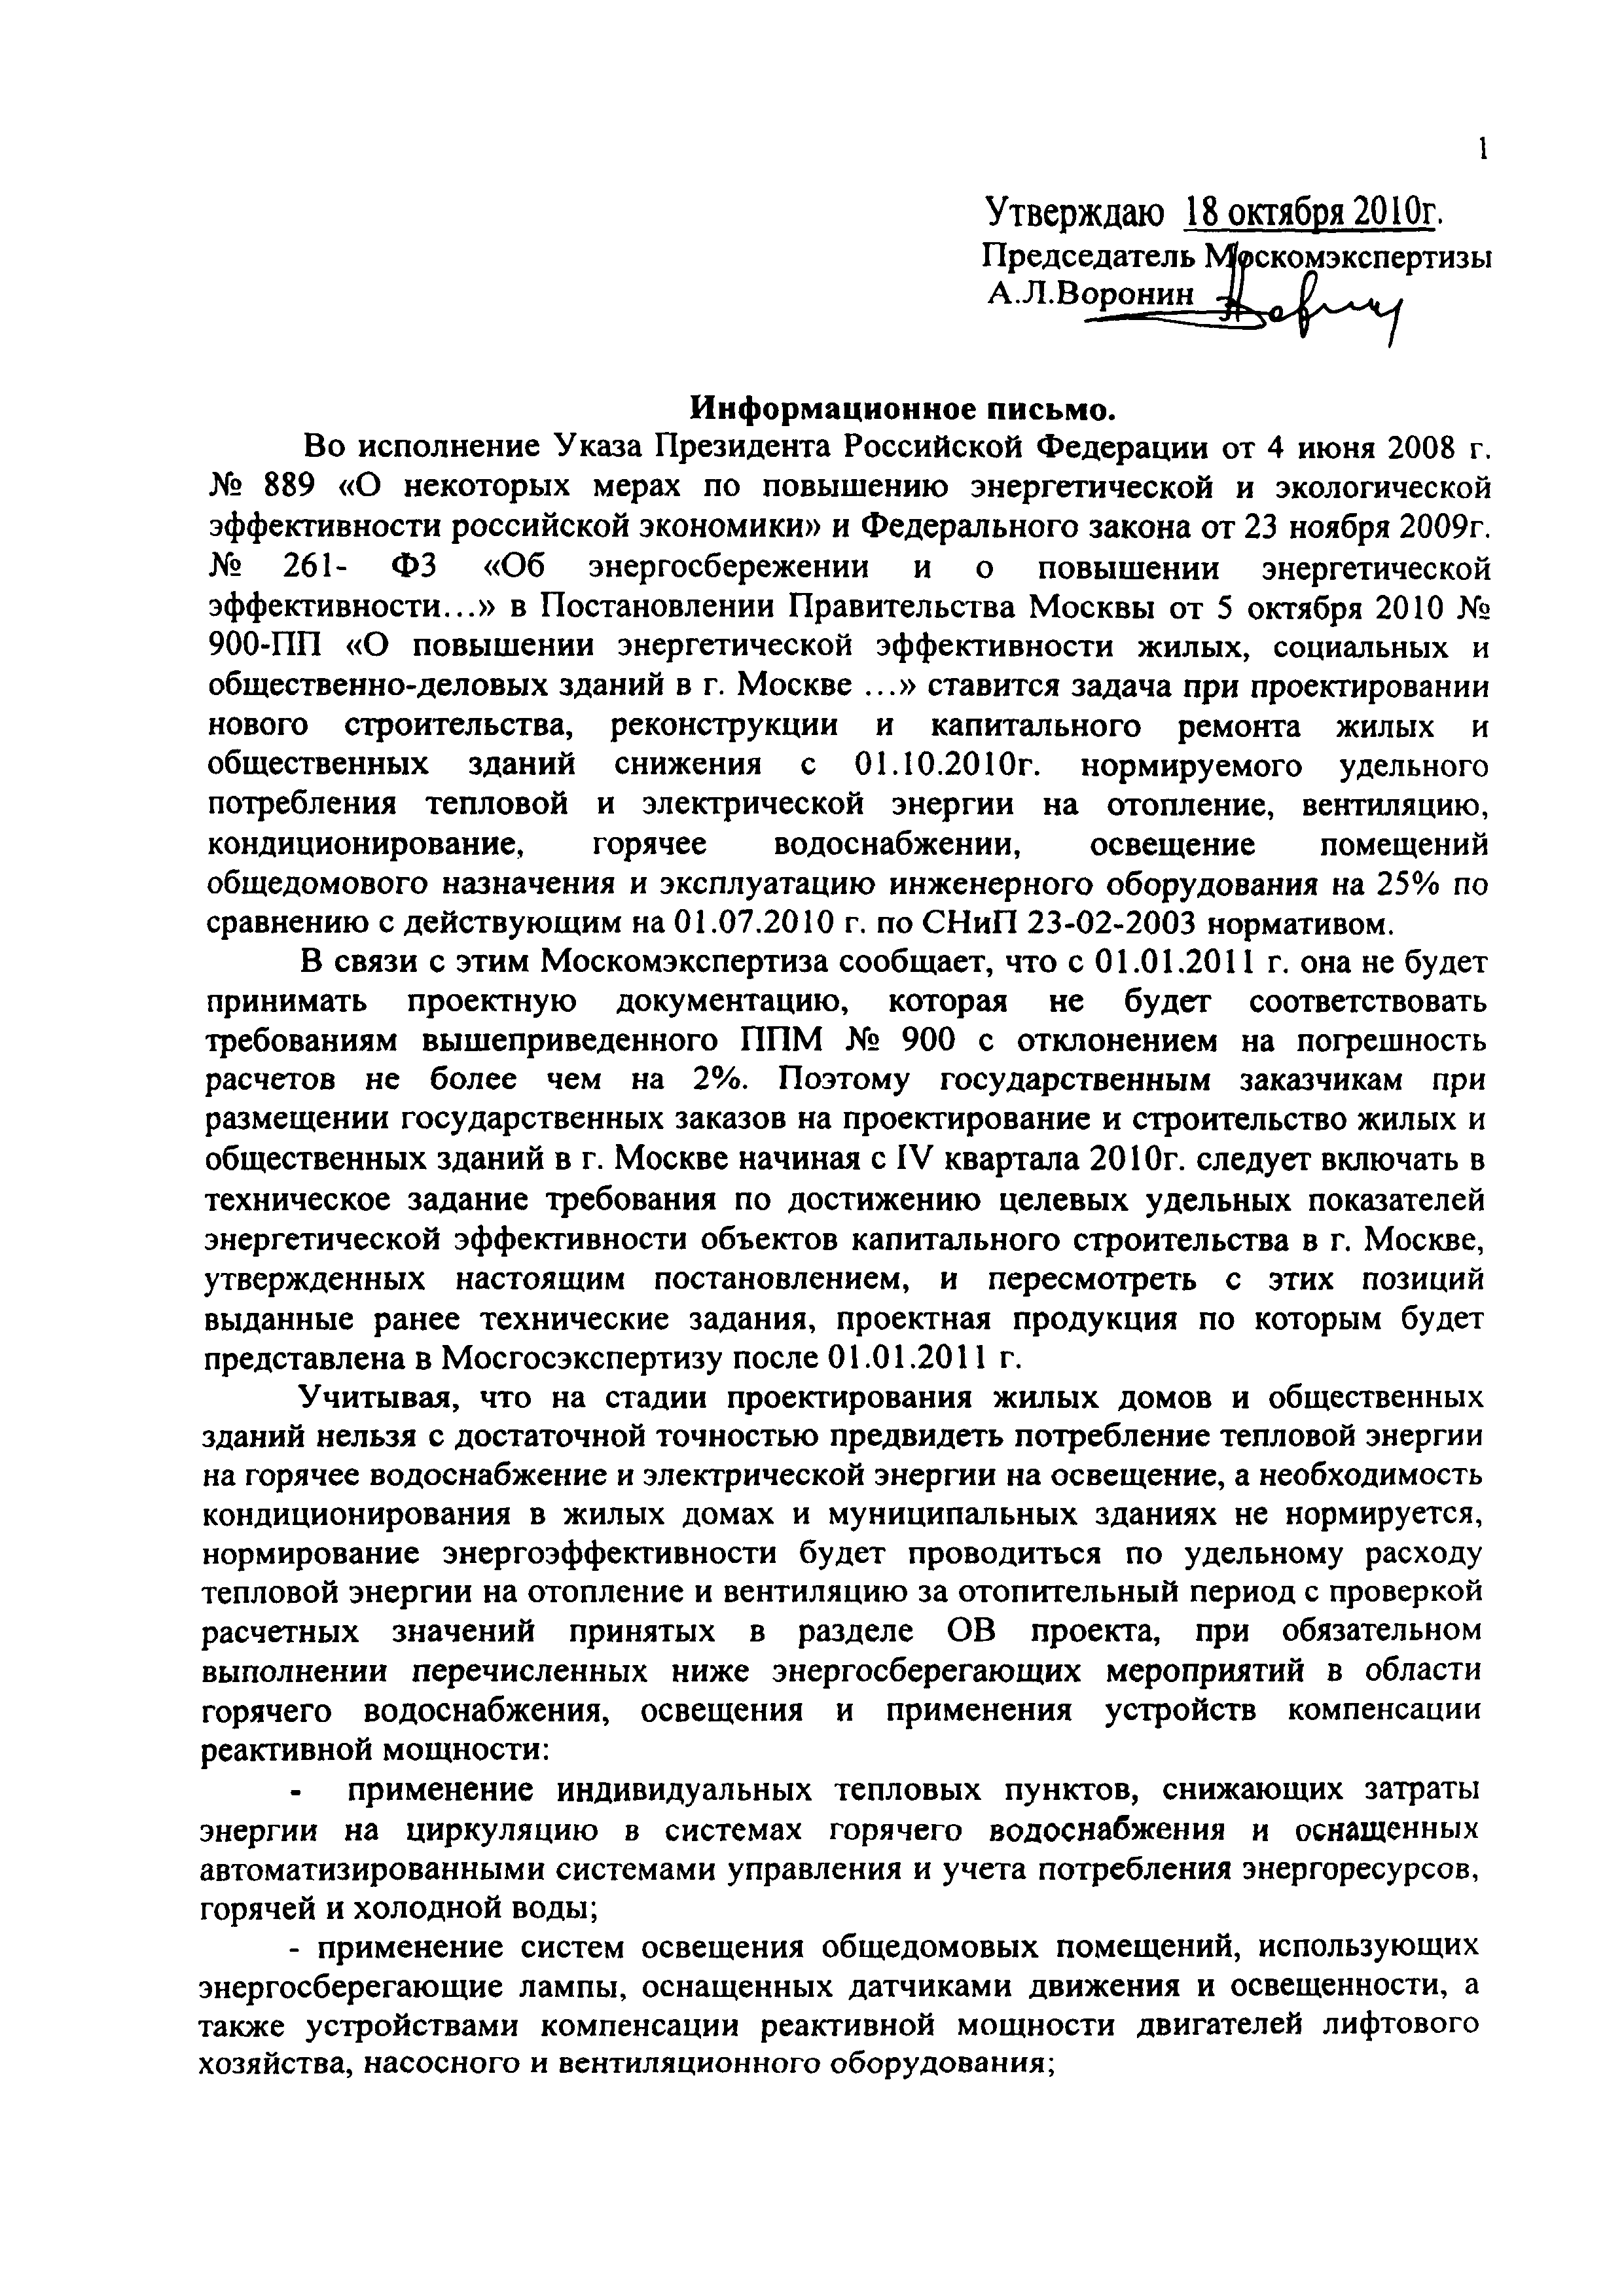 Информационное письмо МГЭ-30/1431